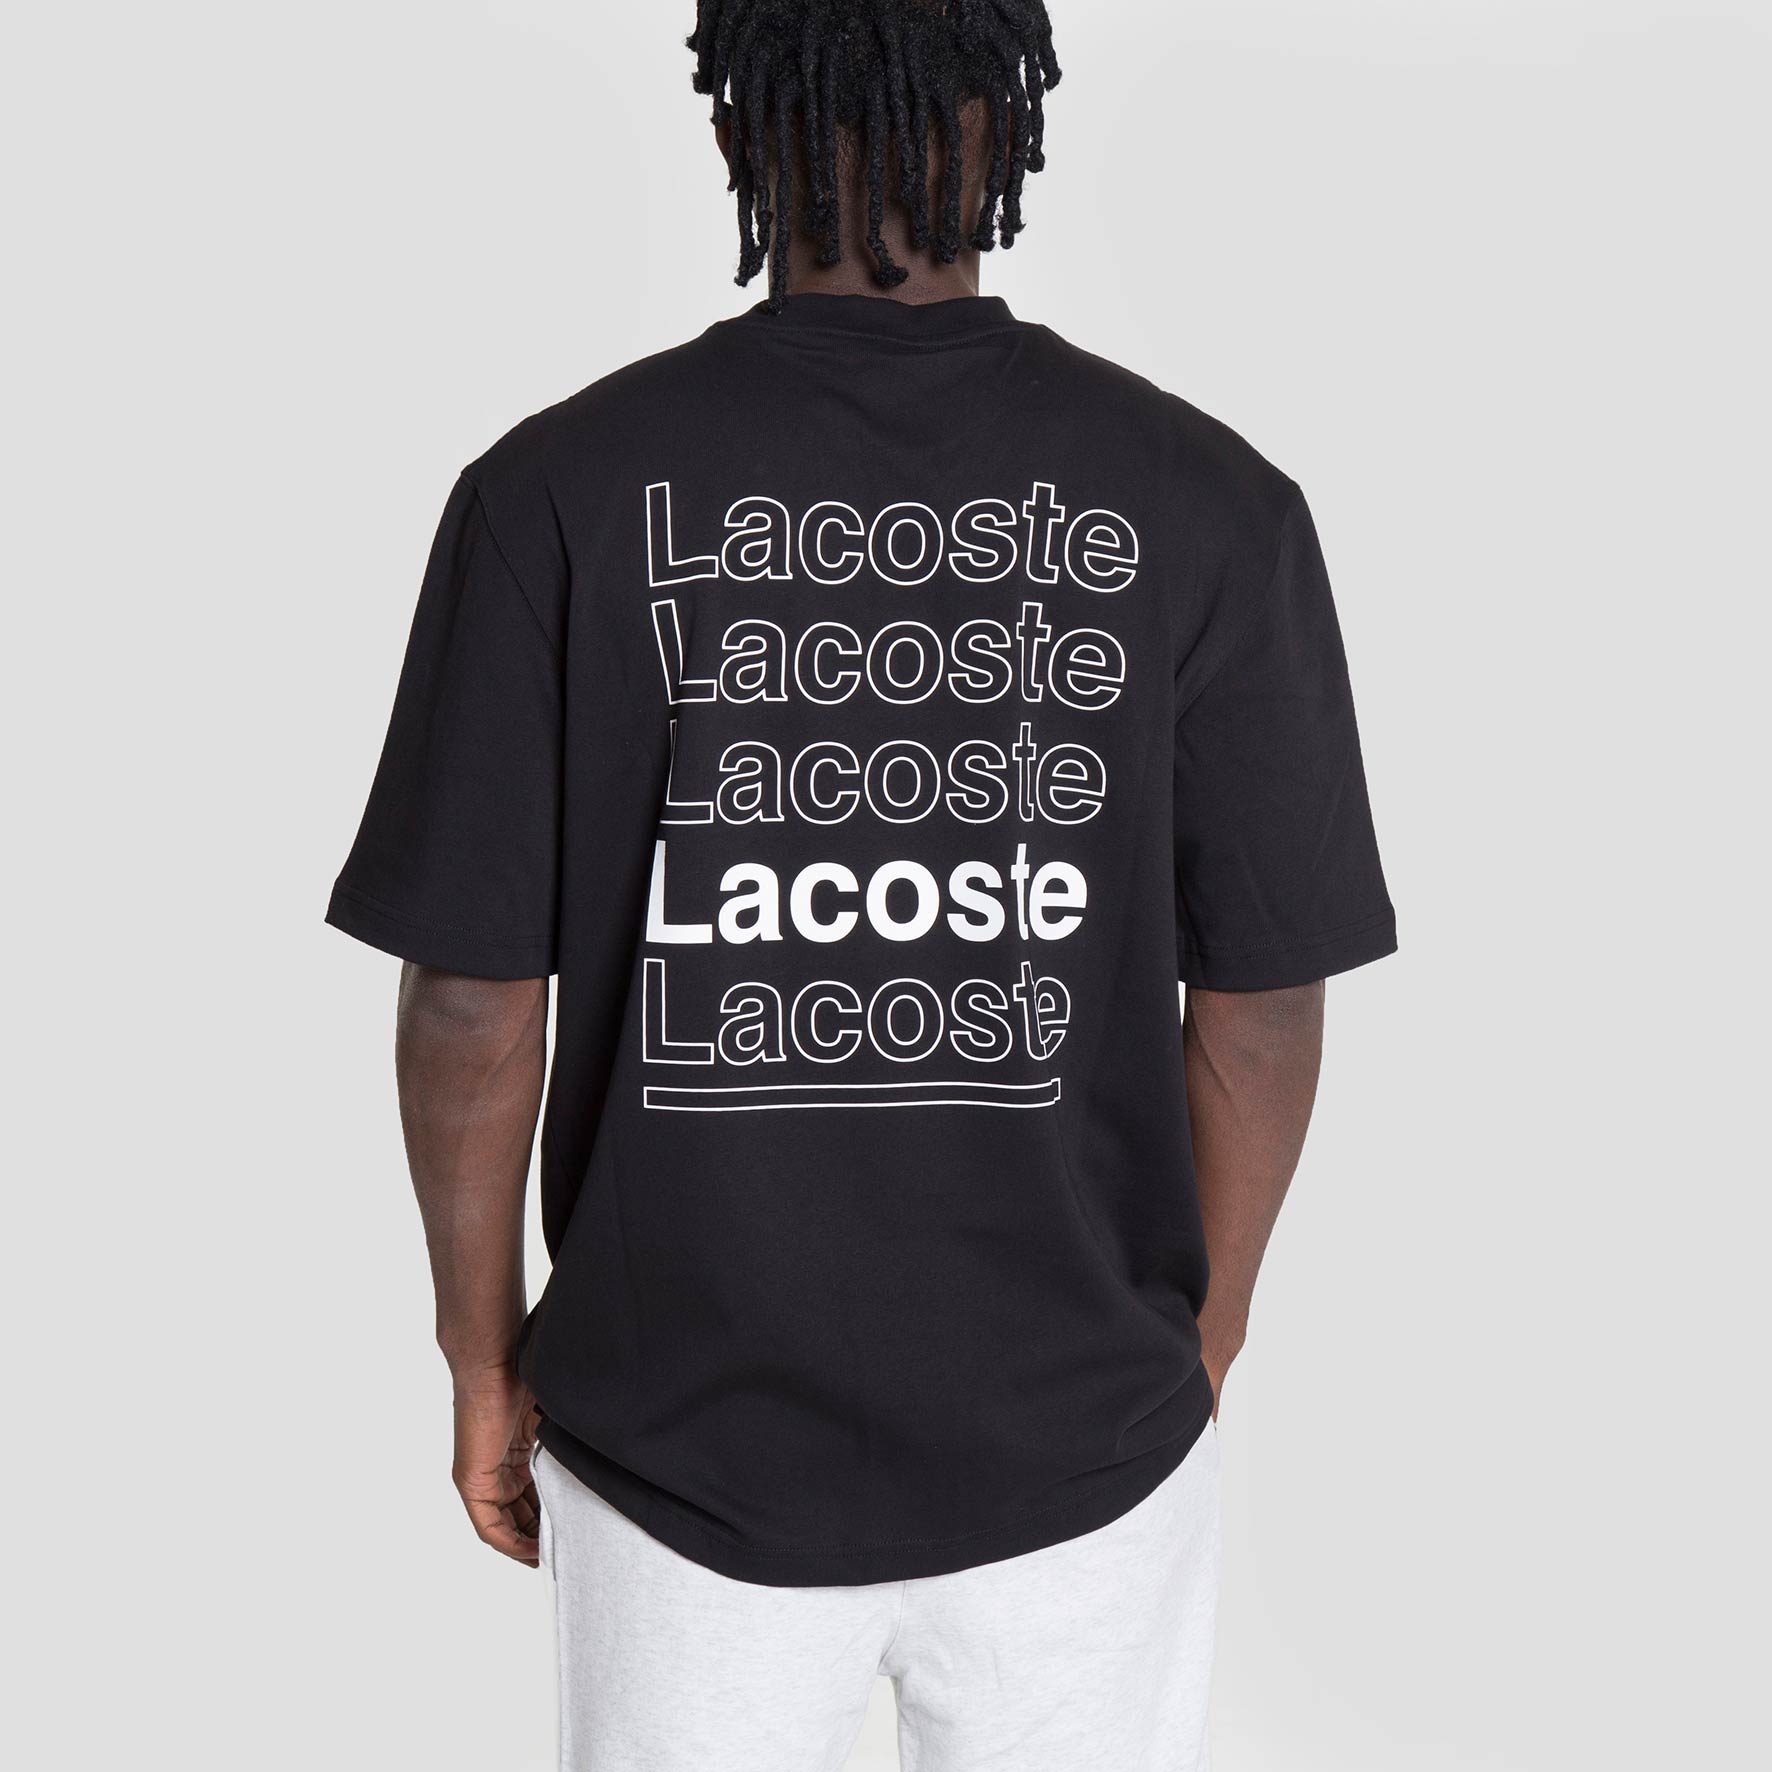 Lacoste Live Camiseta - TH7293-031 - Colección Chico